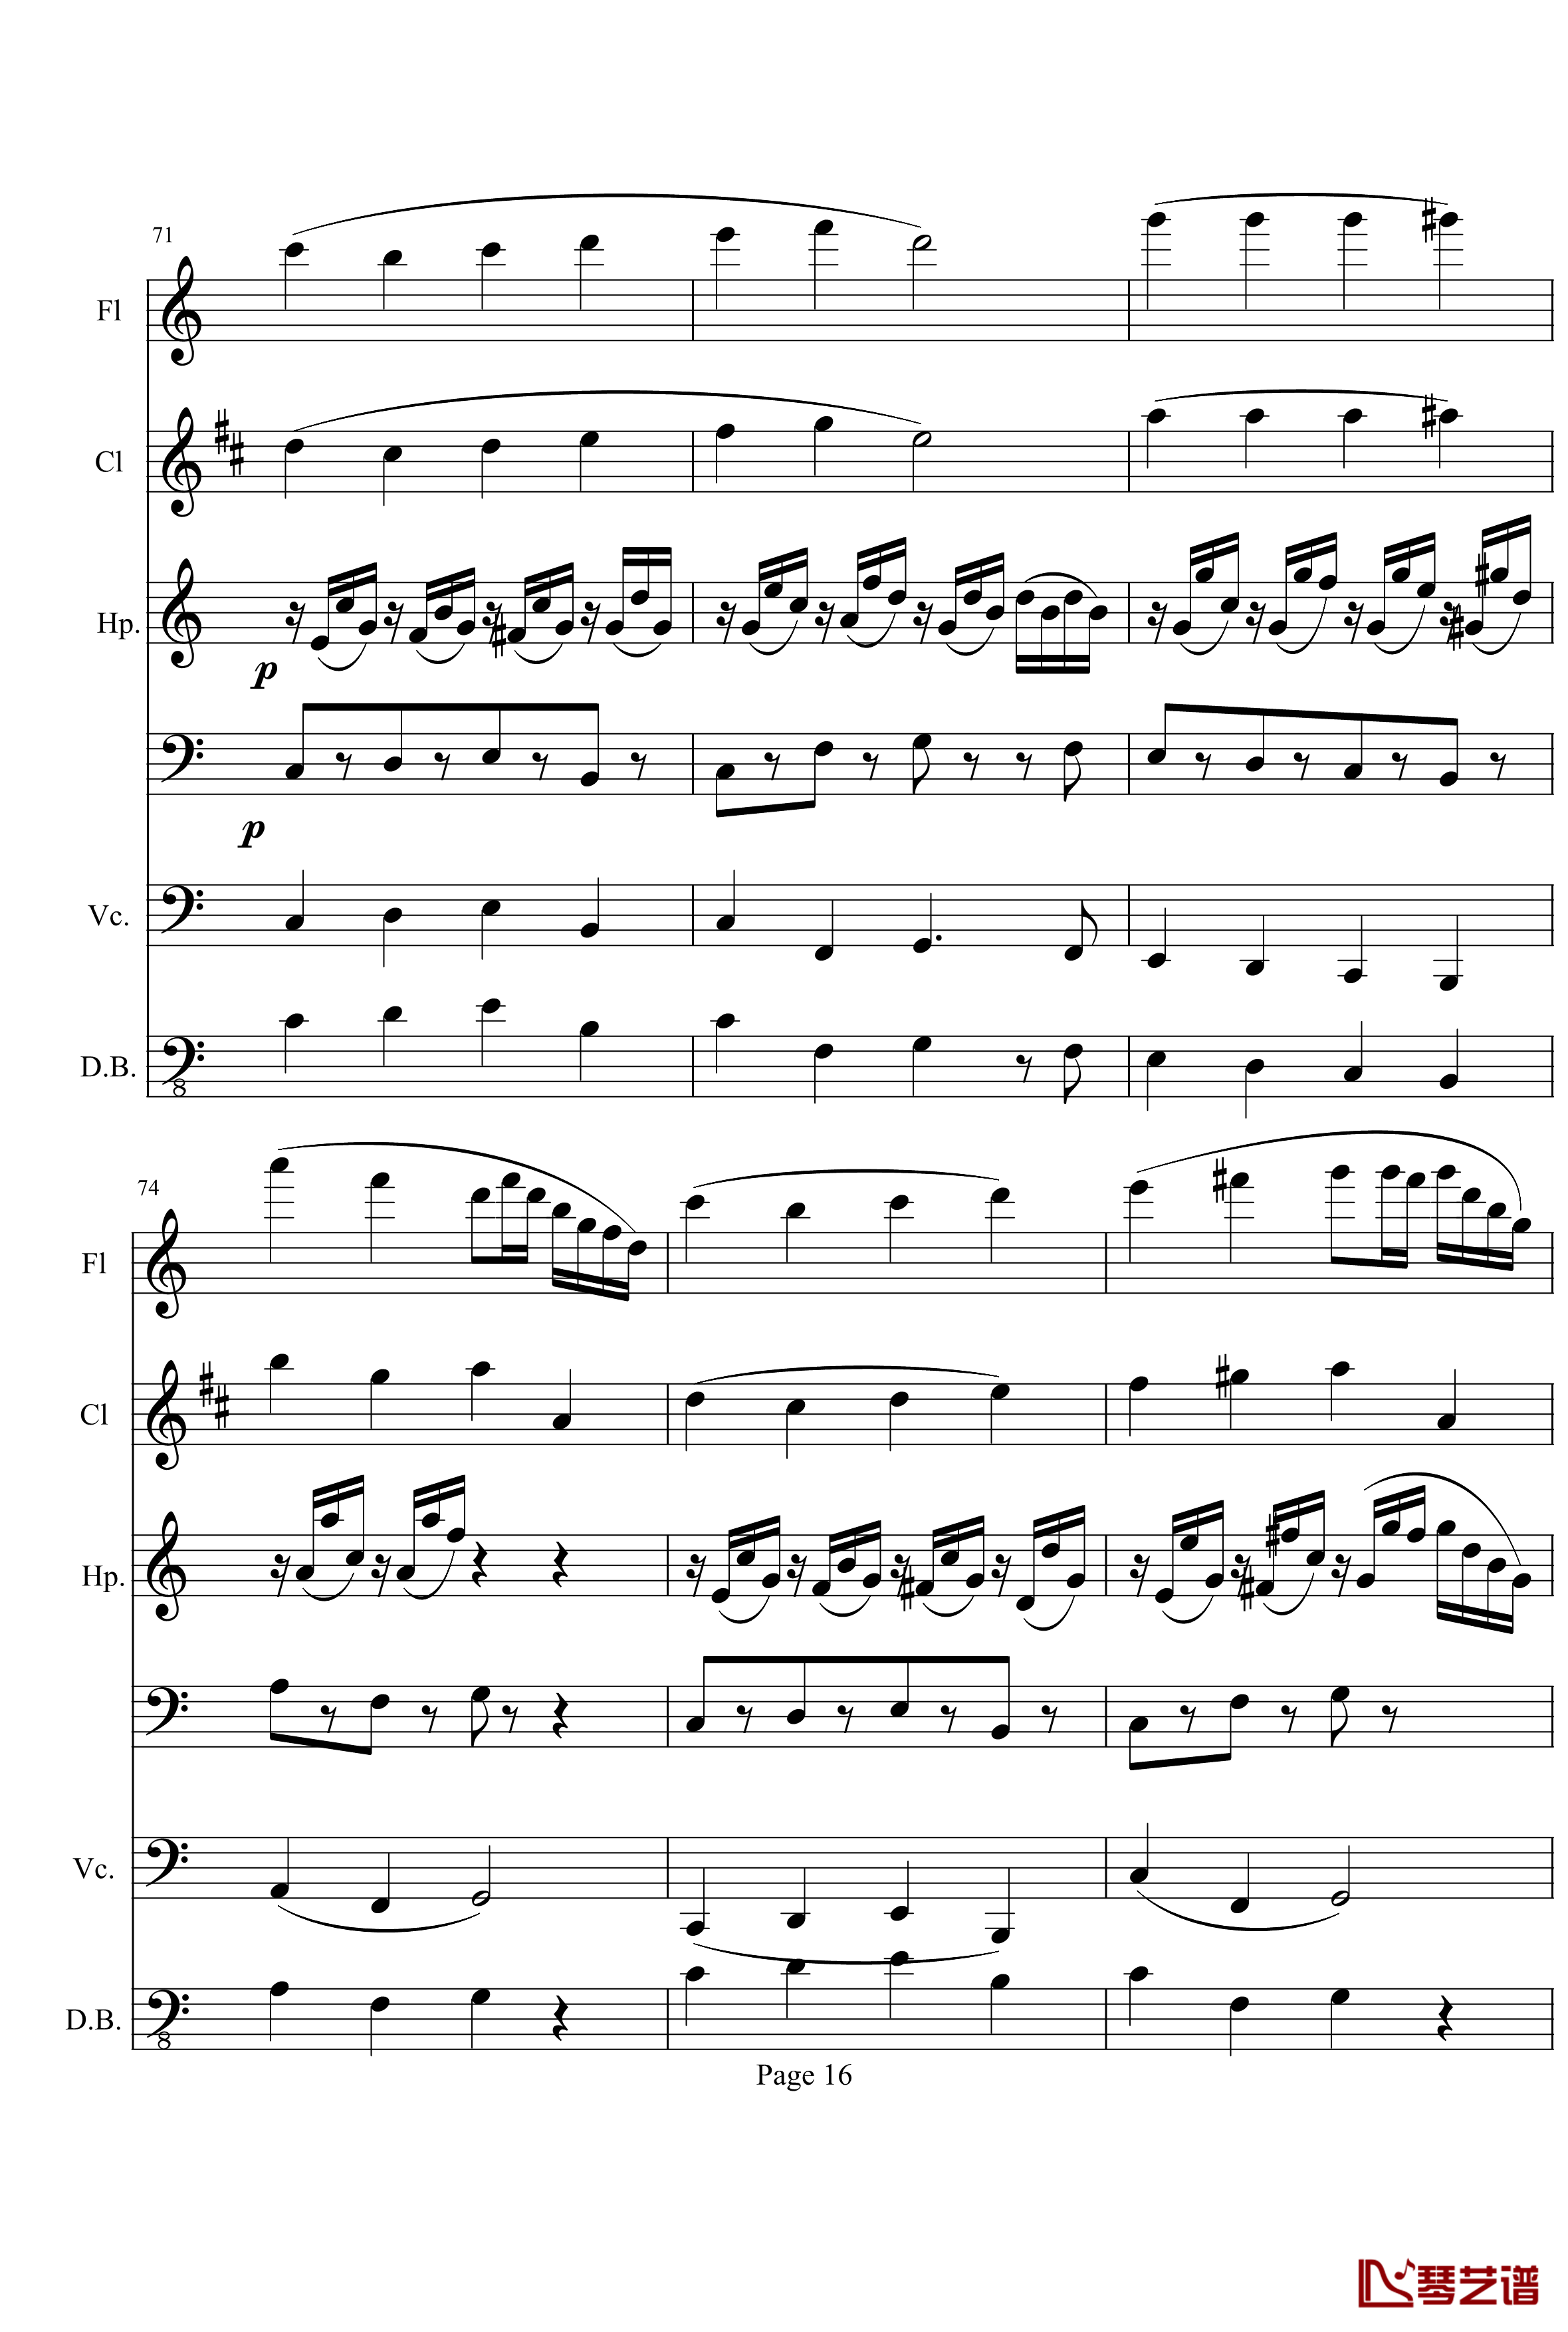 奏鸣曲之交响钢琴谱-第10首-Ⅱ-贝多芬-beethoven16